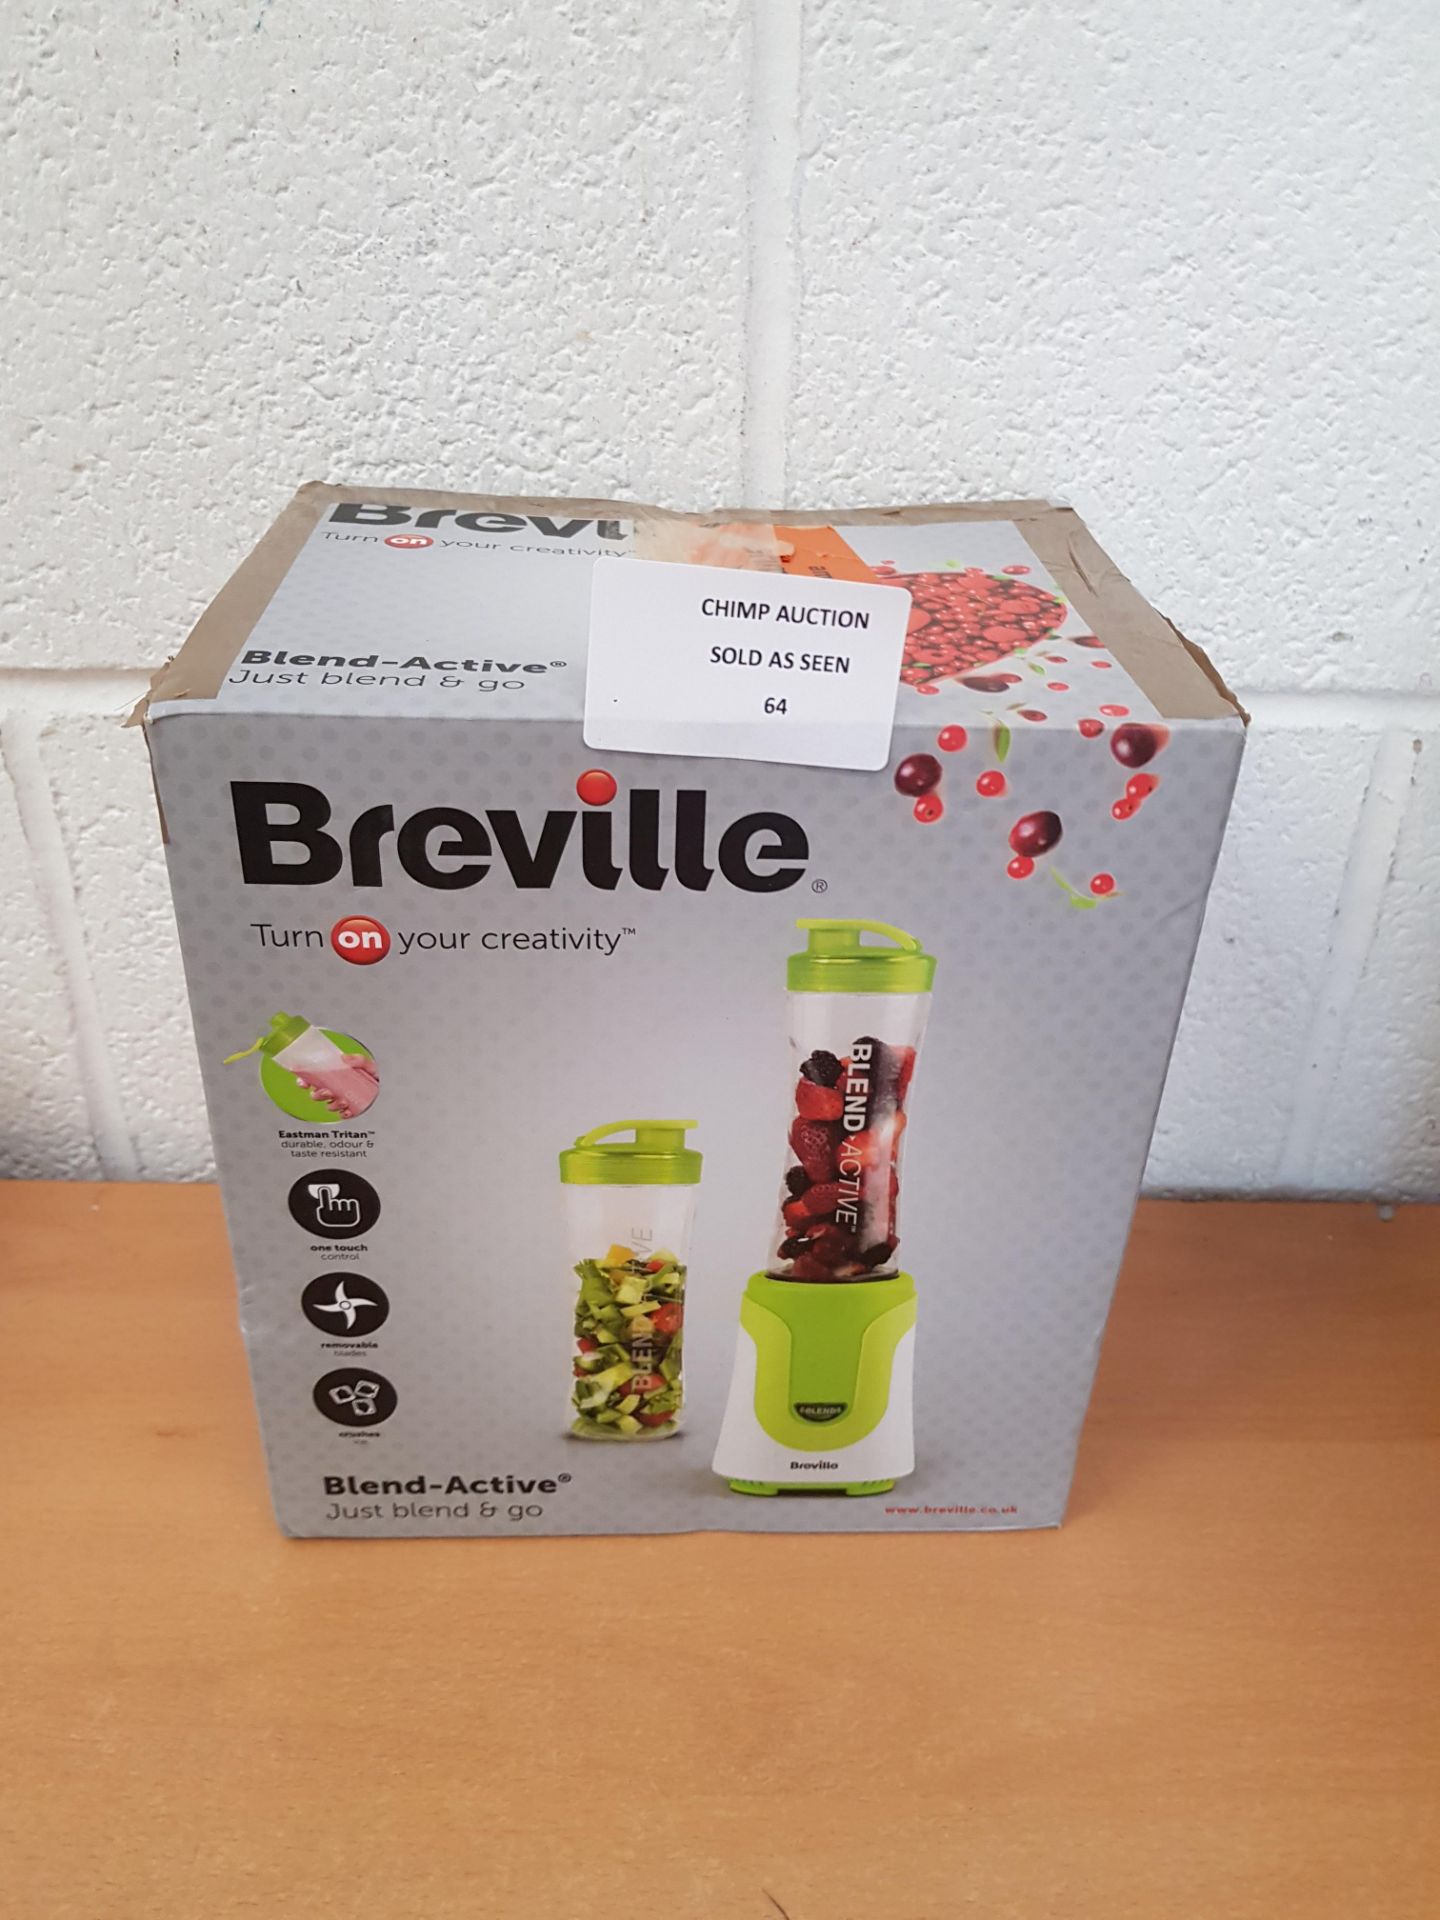 Breville Blend-Active Blender